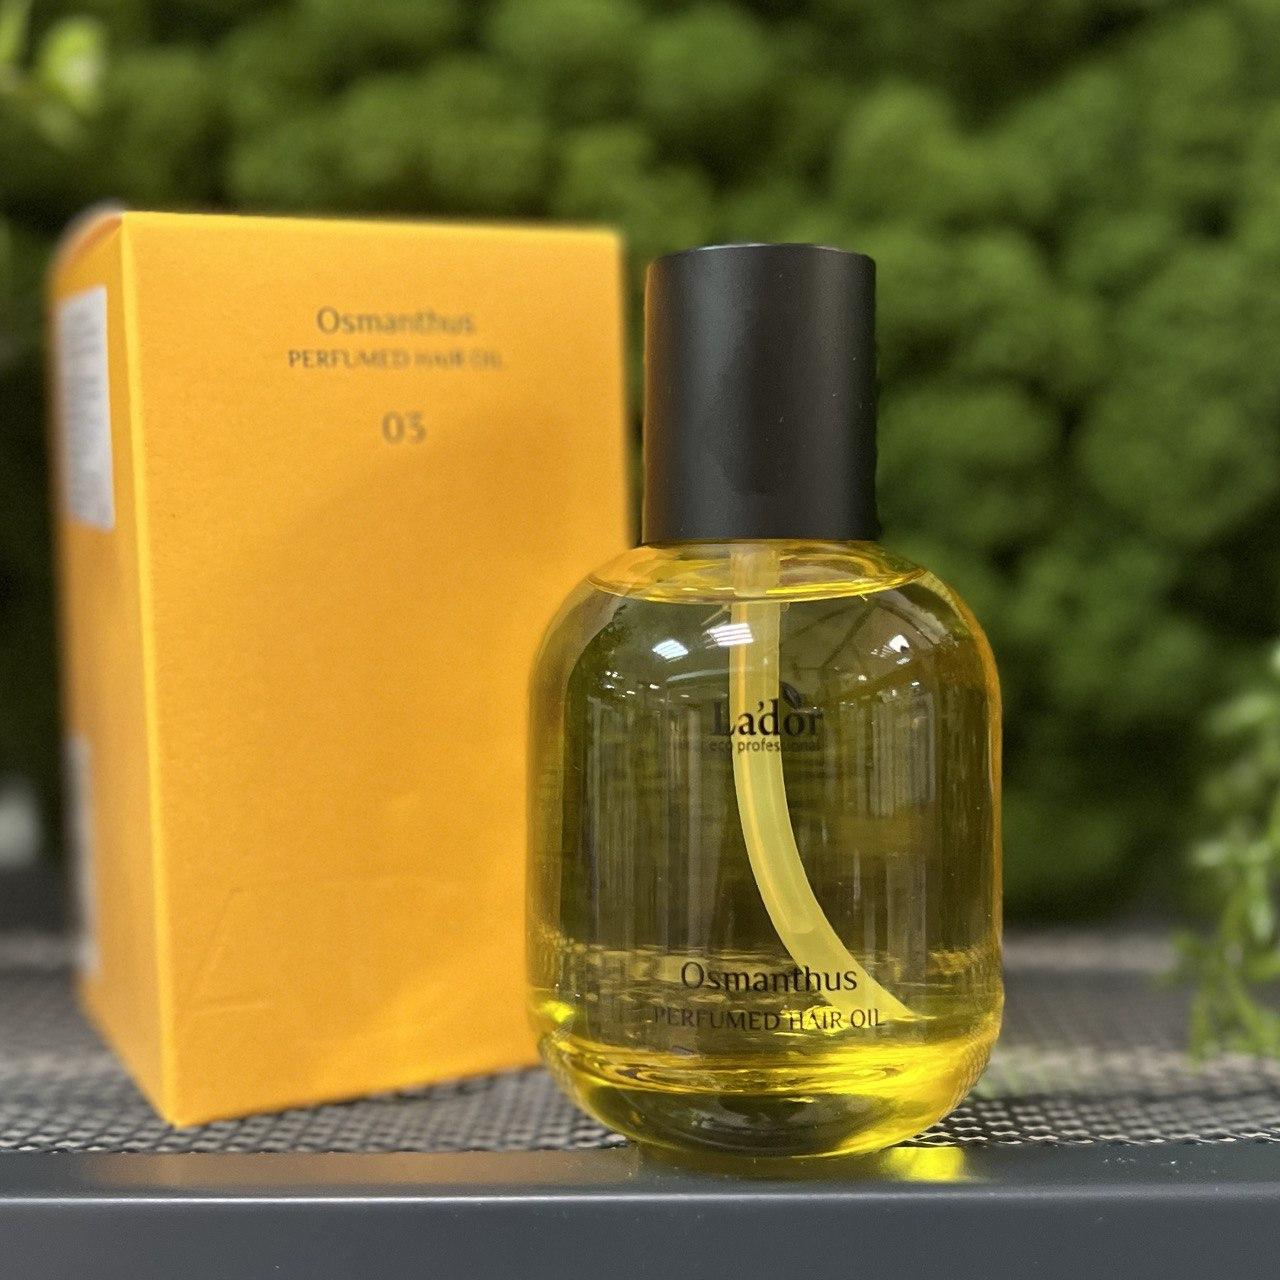 Восстанавливающее парфюмированное масло для волос Lador Perfumed Hair Oil 03 Osmanthus 80мл